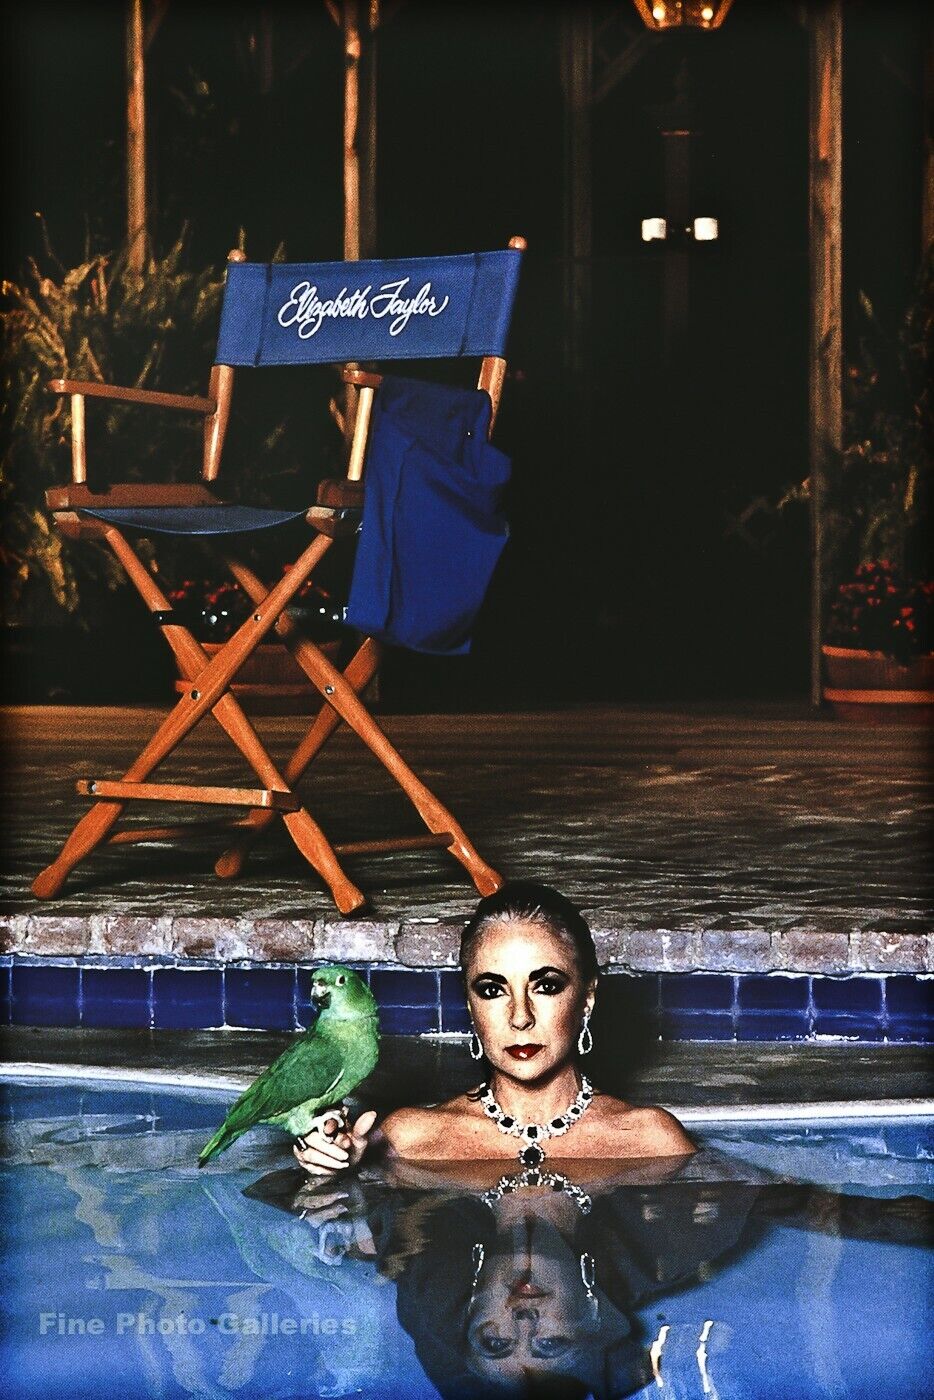 1985 Vintage LIZ TAYLOR Movie Actress HELMUT NEWTON Parrot Pool Photo Art 11X14